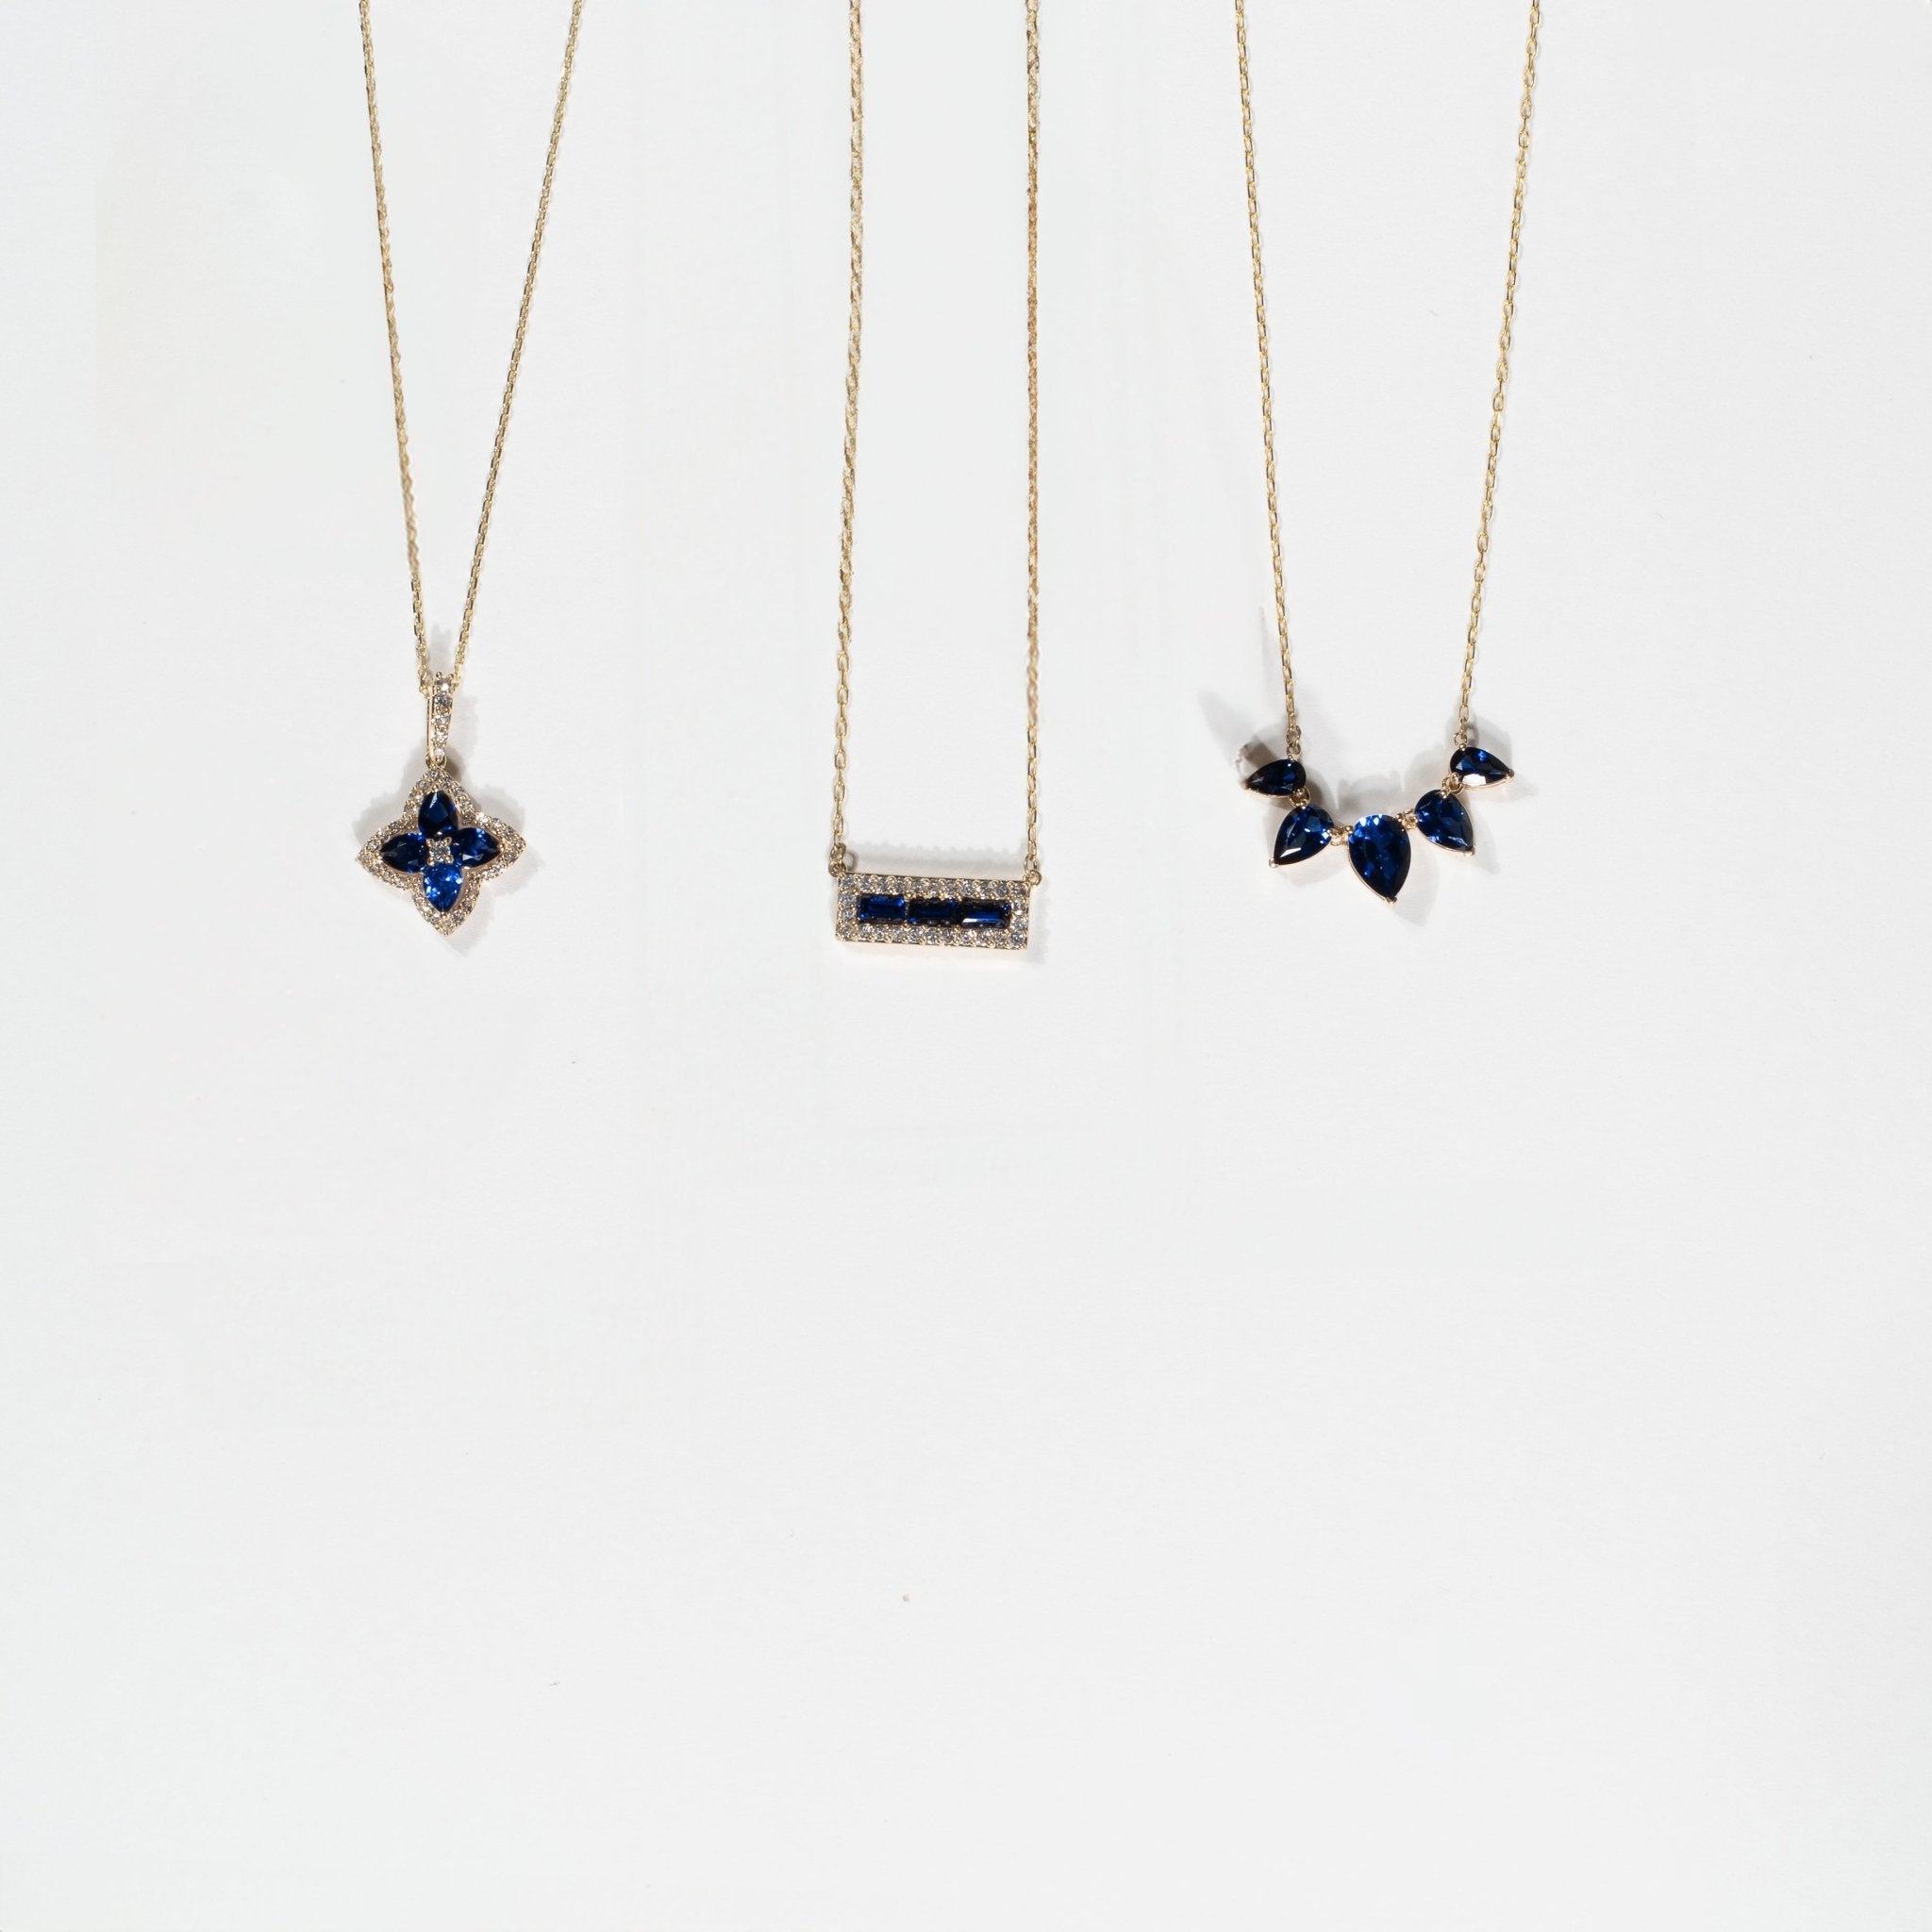 Blue and White Sapphire Bar Necklace Necklaces Estella Collection #product_description# 32709 10k Birthstone blue #tag4# #tag5# #tag6# #tag7# #tag8# #tag9# #tag10#